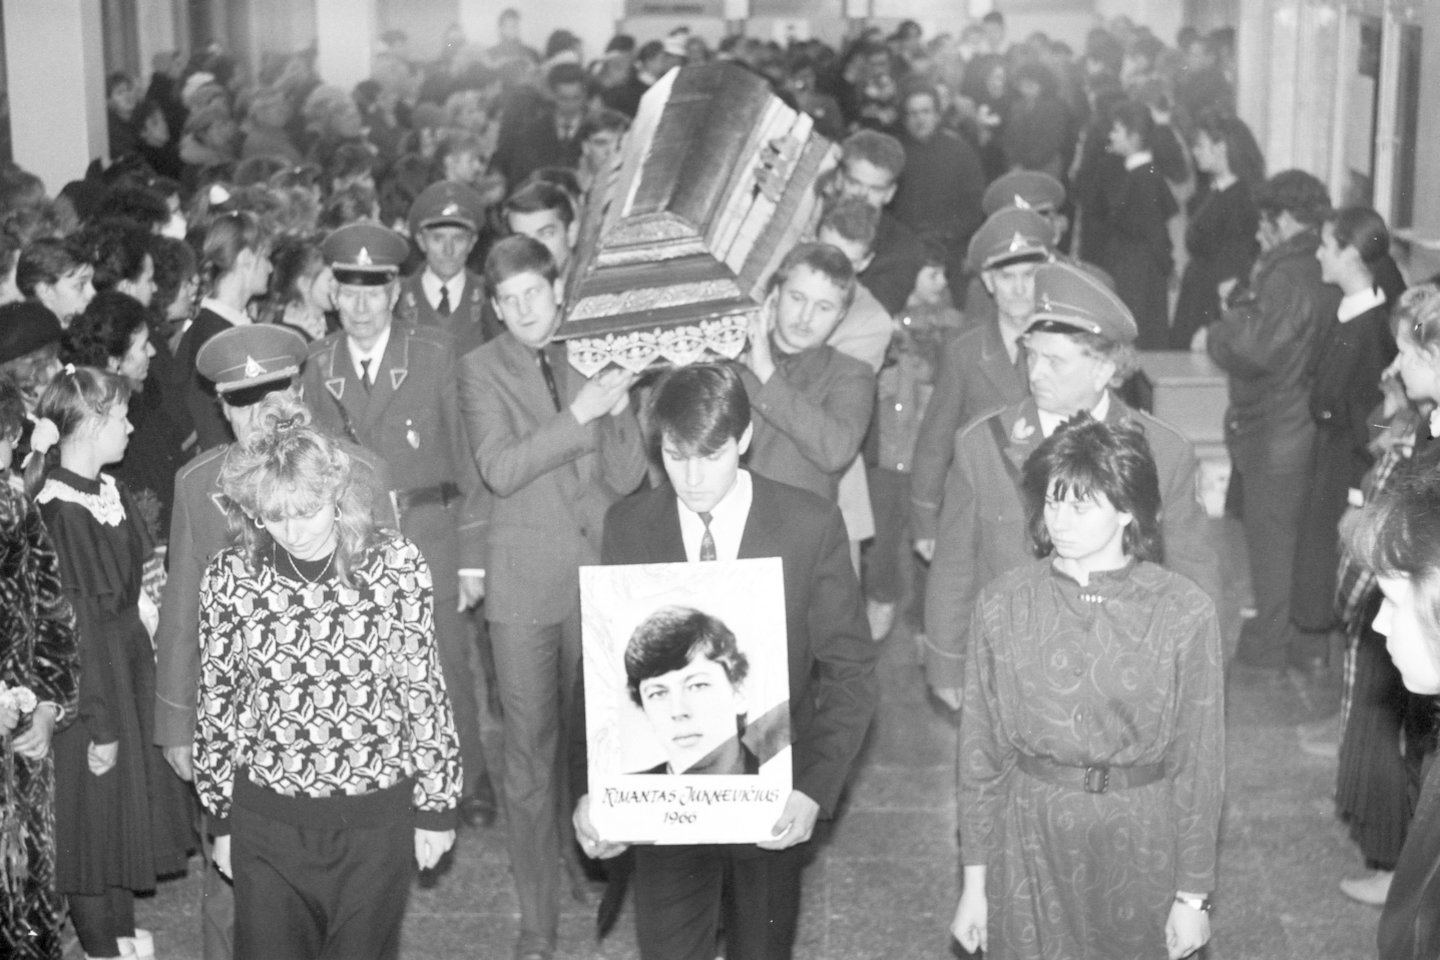   1991-ųjų sausio 13-ąją žuvęs studentas R.Juknevičius į paskutinę kelionę Marijampolėje buvo palydėtas iš mokyklos, kurią baigė.  <br> R.Pasiliausko nuotr.